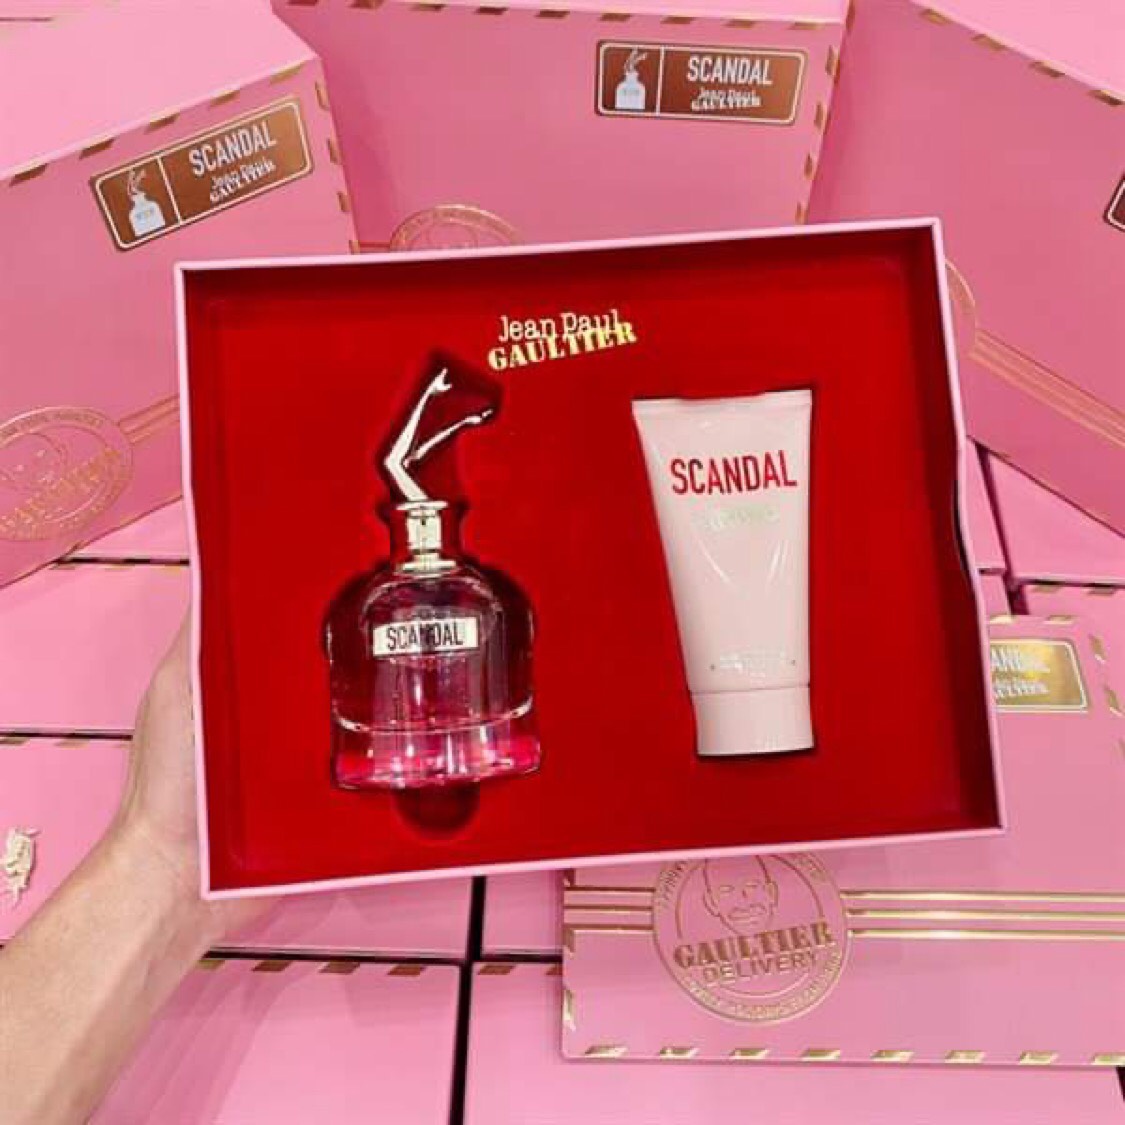 Jean Paul Gaultier Scandal Gift Set 1 - Nuochoarosa.com - Nước hoa cao cấp, chính hãng giá tốt, mẫu mới